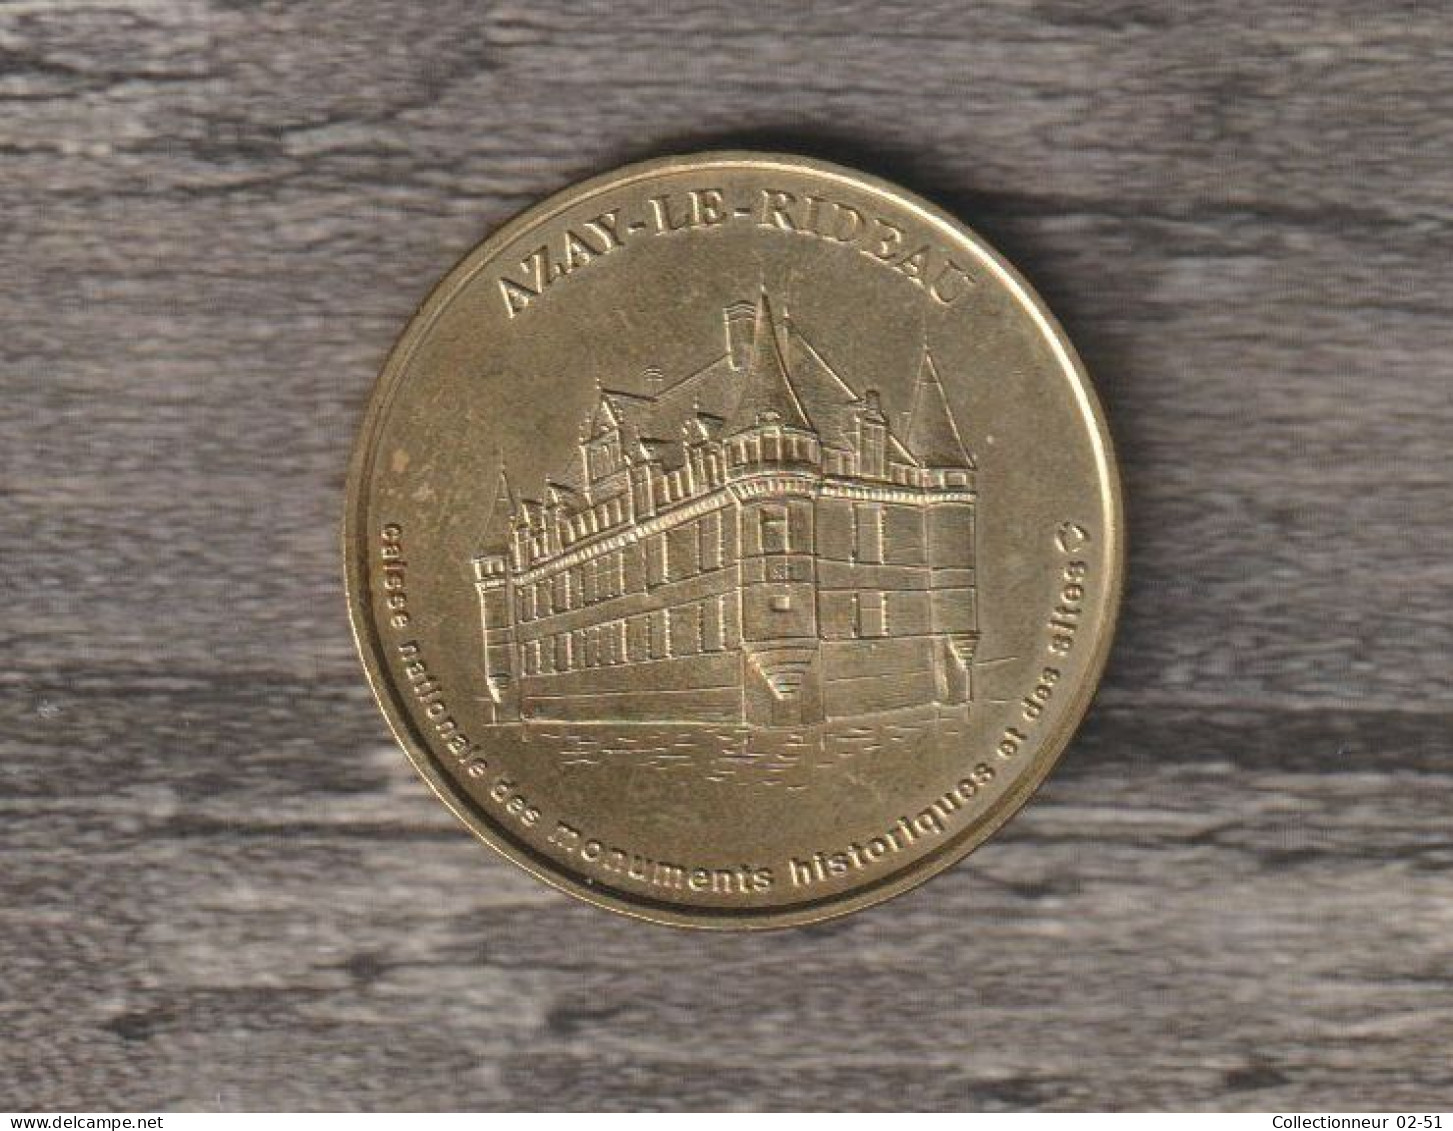 Monnaie De Paris : Azay-le-Rideau - 1998 - Undated